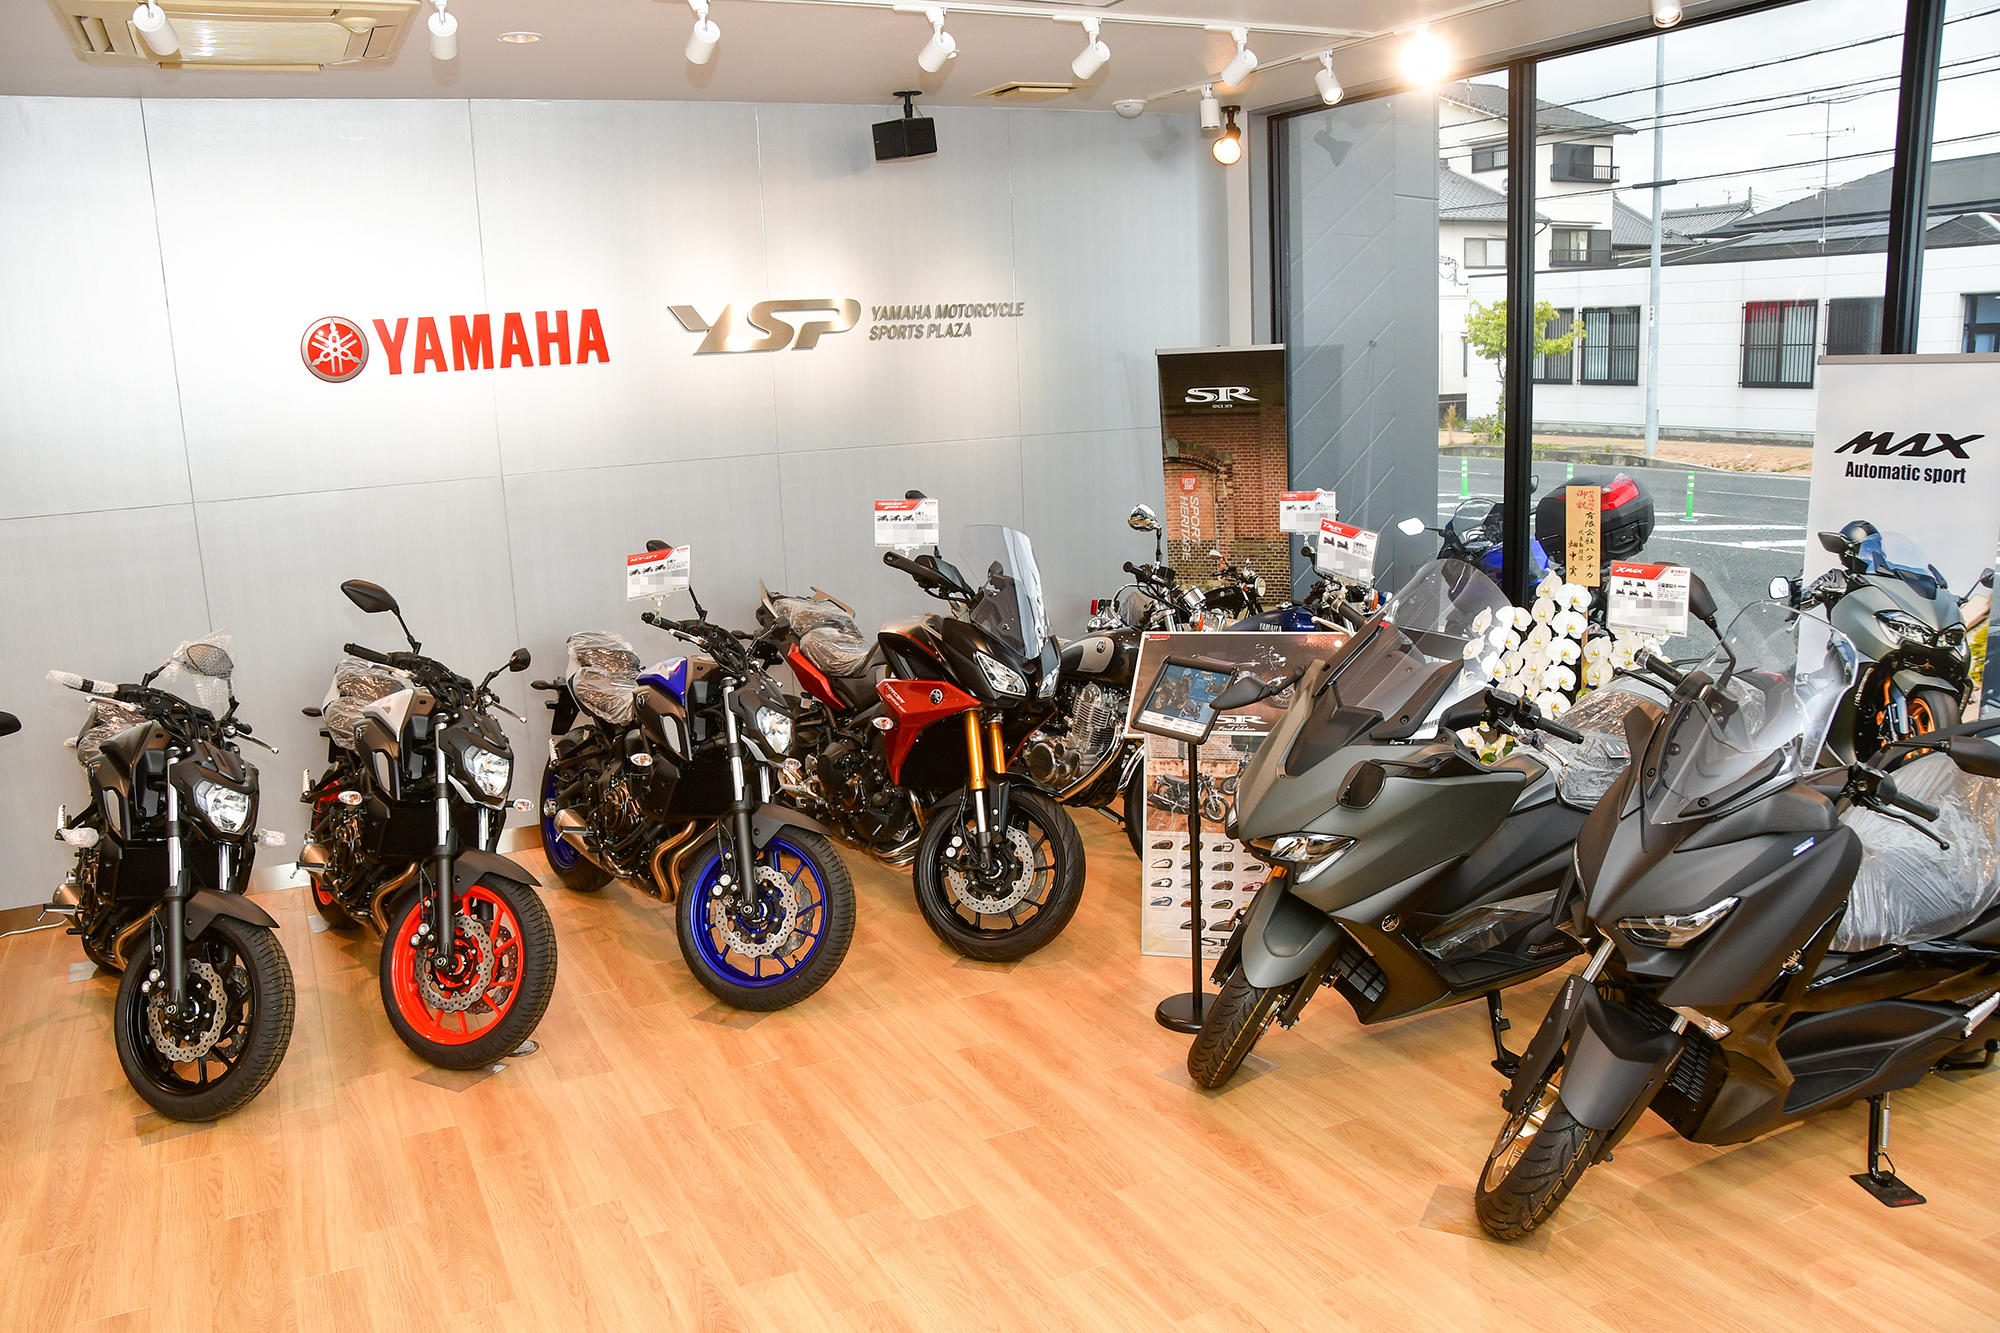 「オープン以来、これまで奈良にYSP がなかったこともあって、『出店を待ってました！』との声をたくさんのお客さまからいただきました。ヤマハのバイクのことならYSPへという期待の現れだと受け止め、